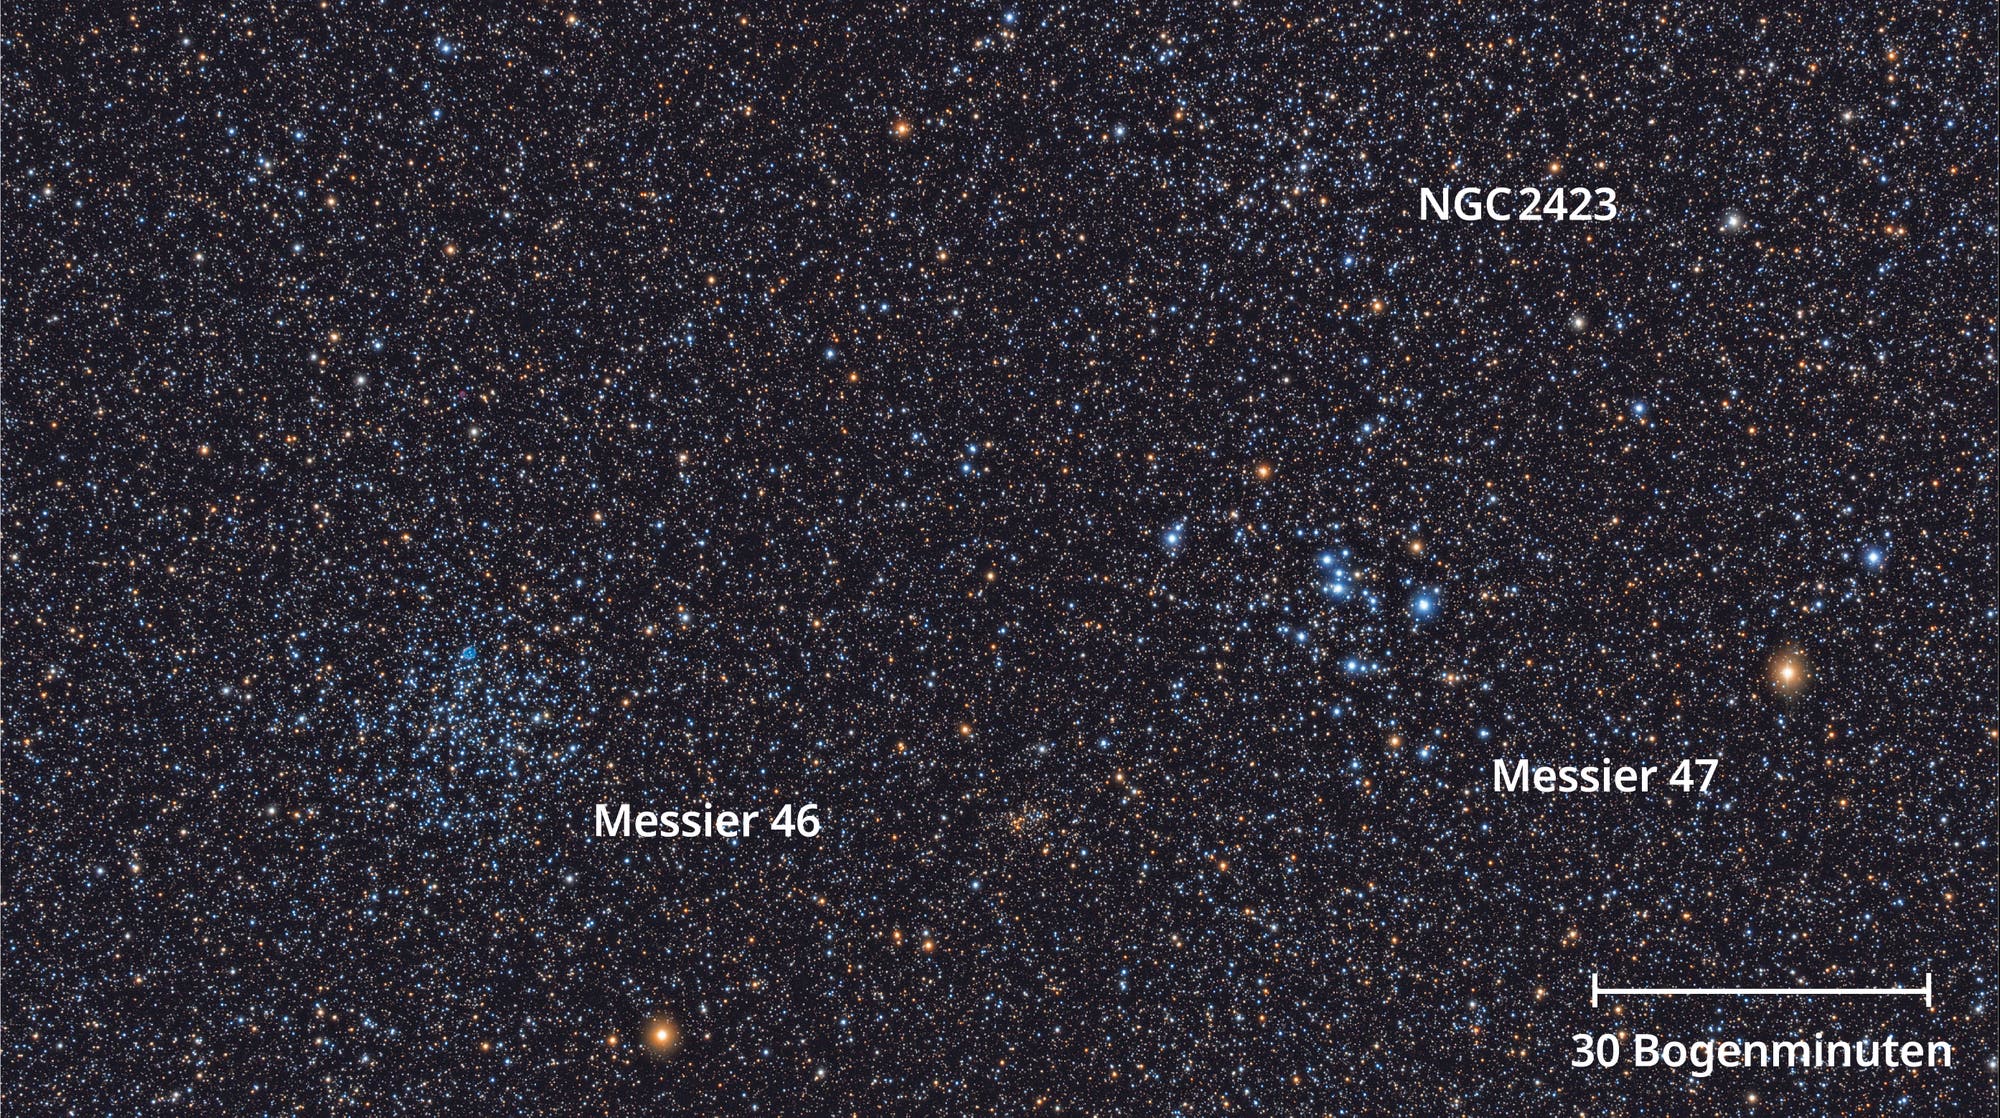 Die Fotografie zeigt die drei am Himmel benachbarten offenen Sternhaufen Messier 46, 47 und NGC 2423